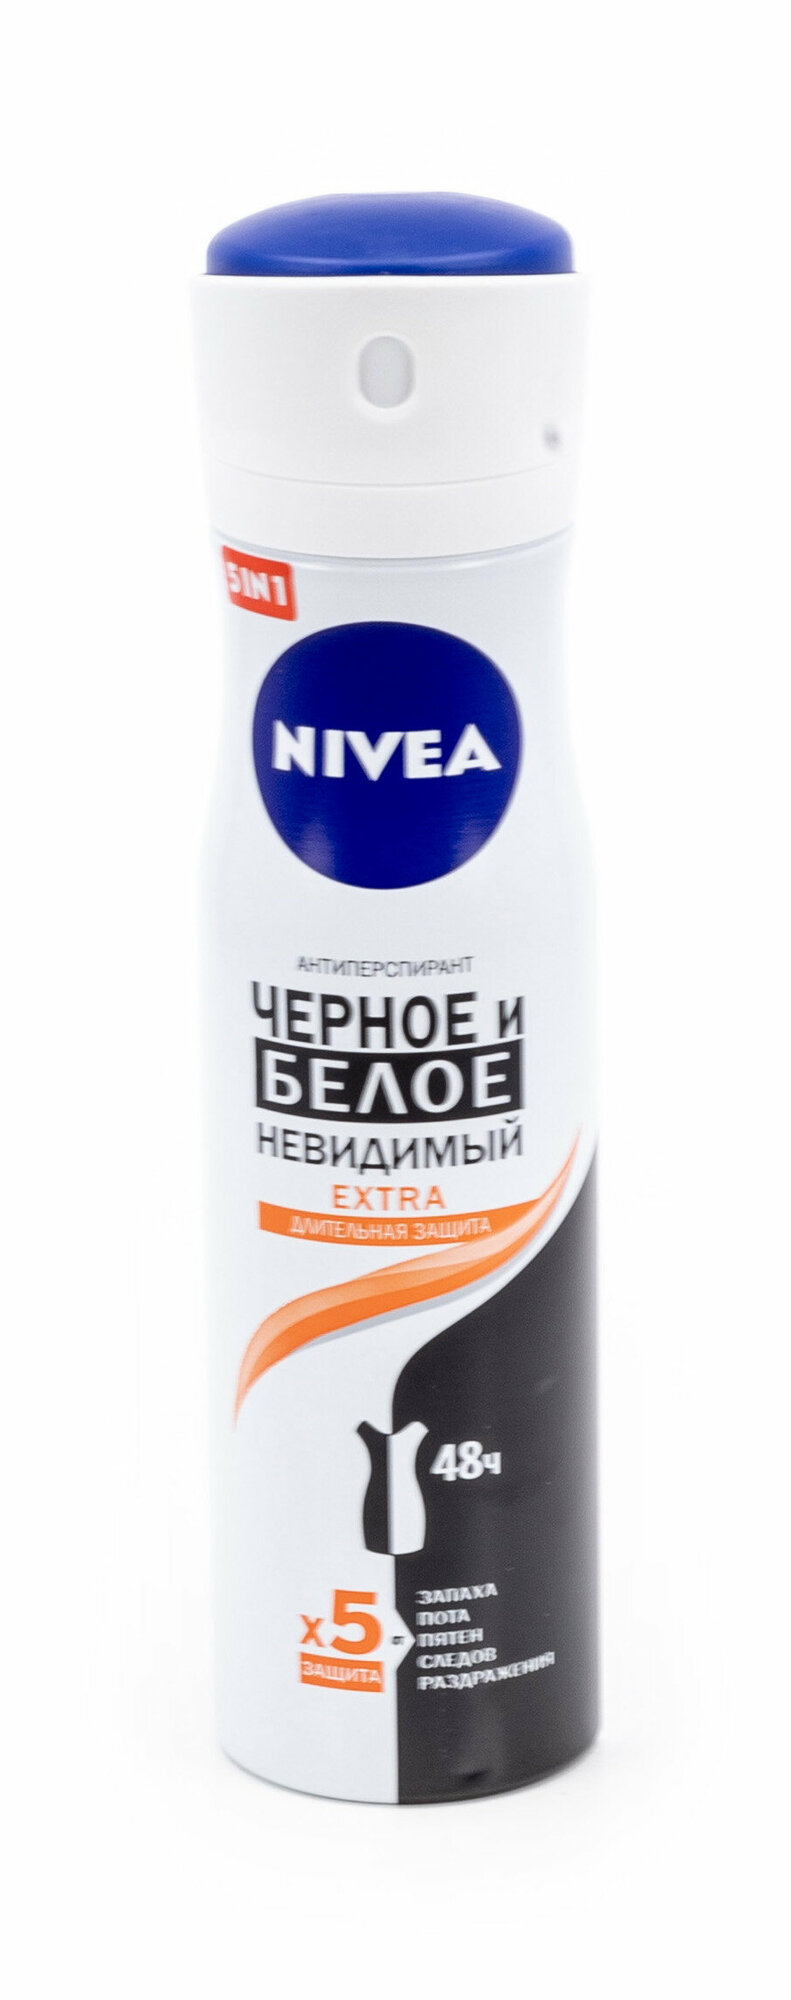 Дезодорант антиперспирант женский Nivea / Нивея Черное и белое Невидимый extra спрей 150мл / защита от пота и запаха